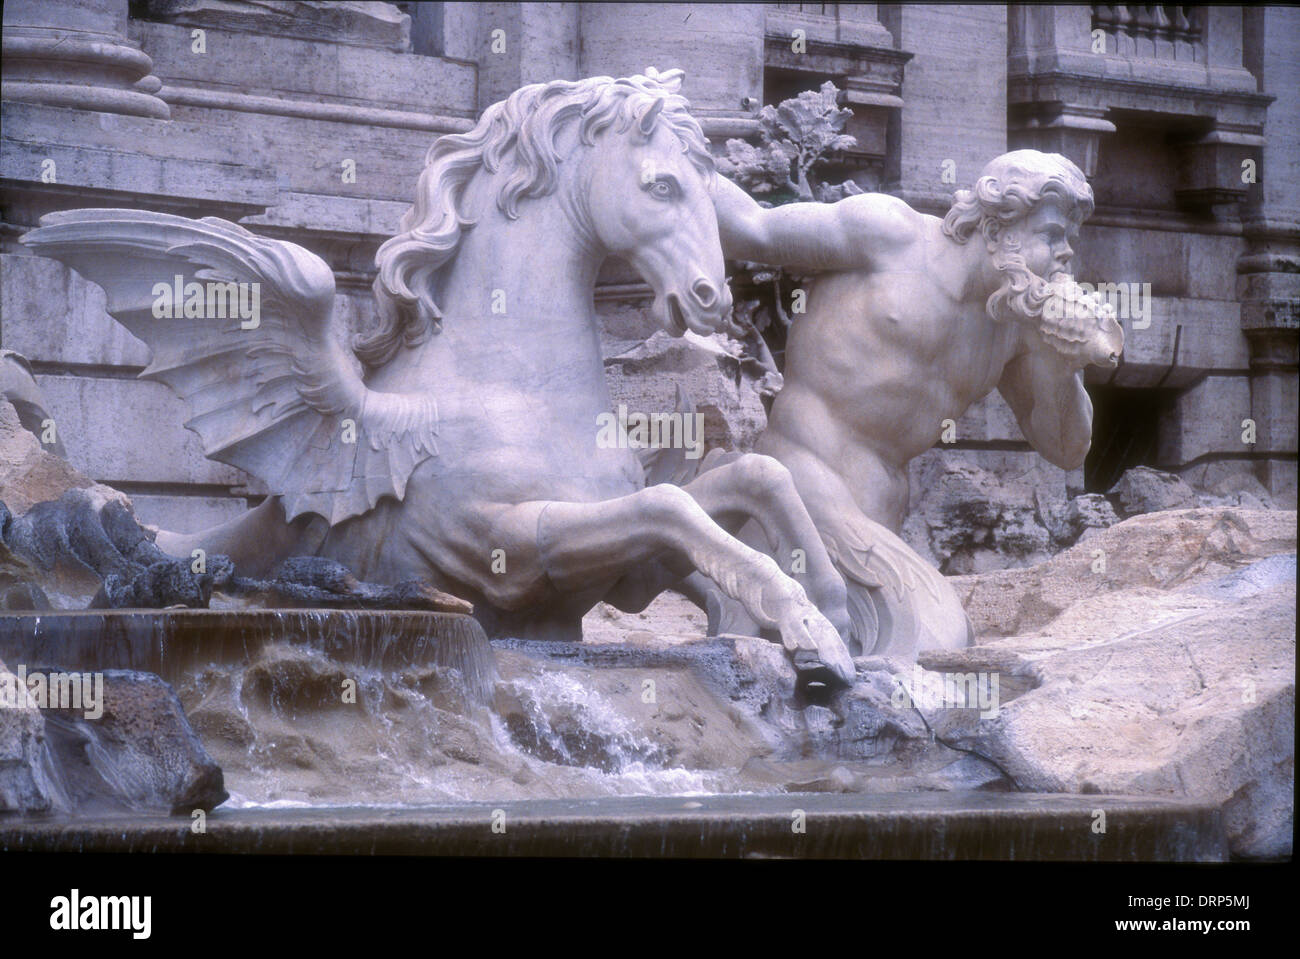 Fontana de Trevi roma detalle de caballo caballo alado escultura Foto de stock